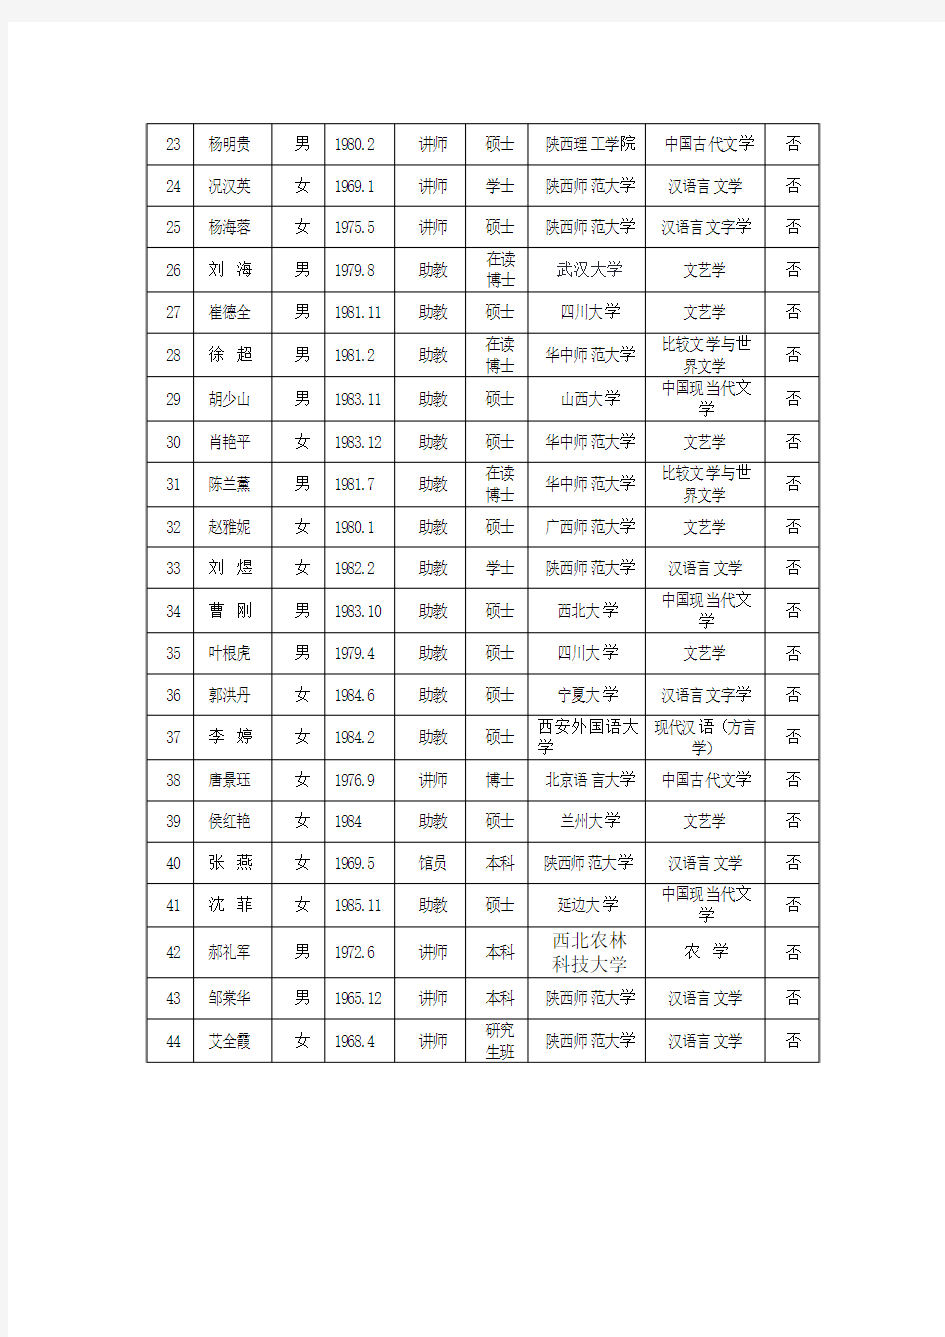 安康学院中文系师资队伍情况一览表